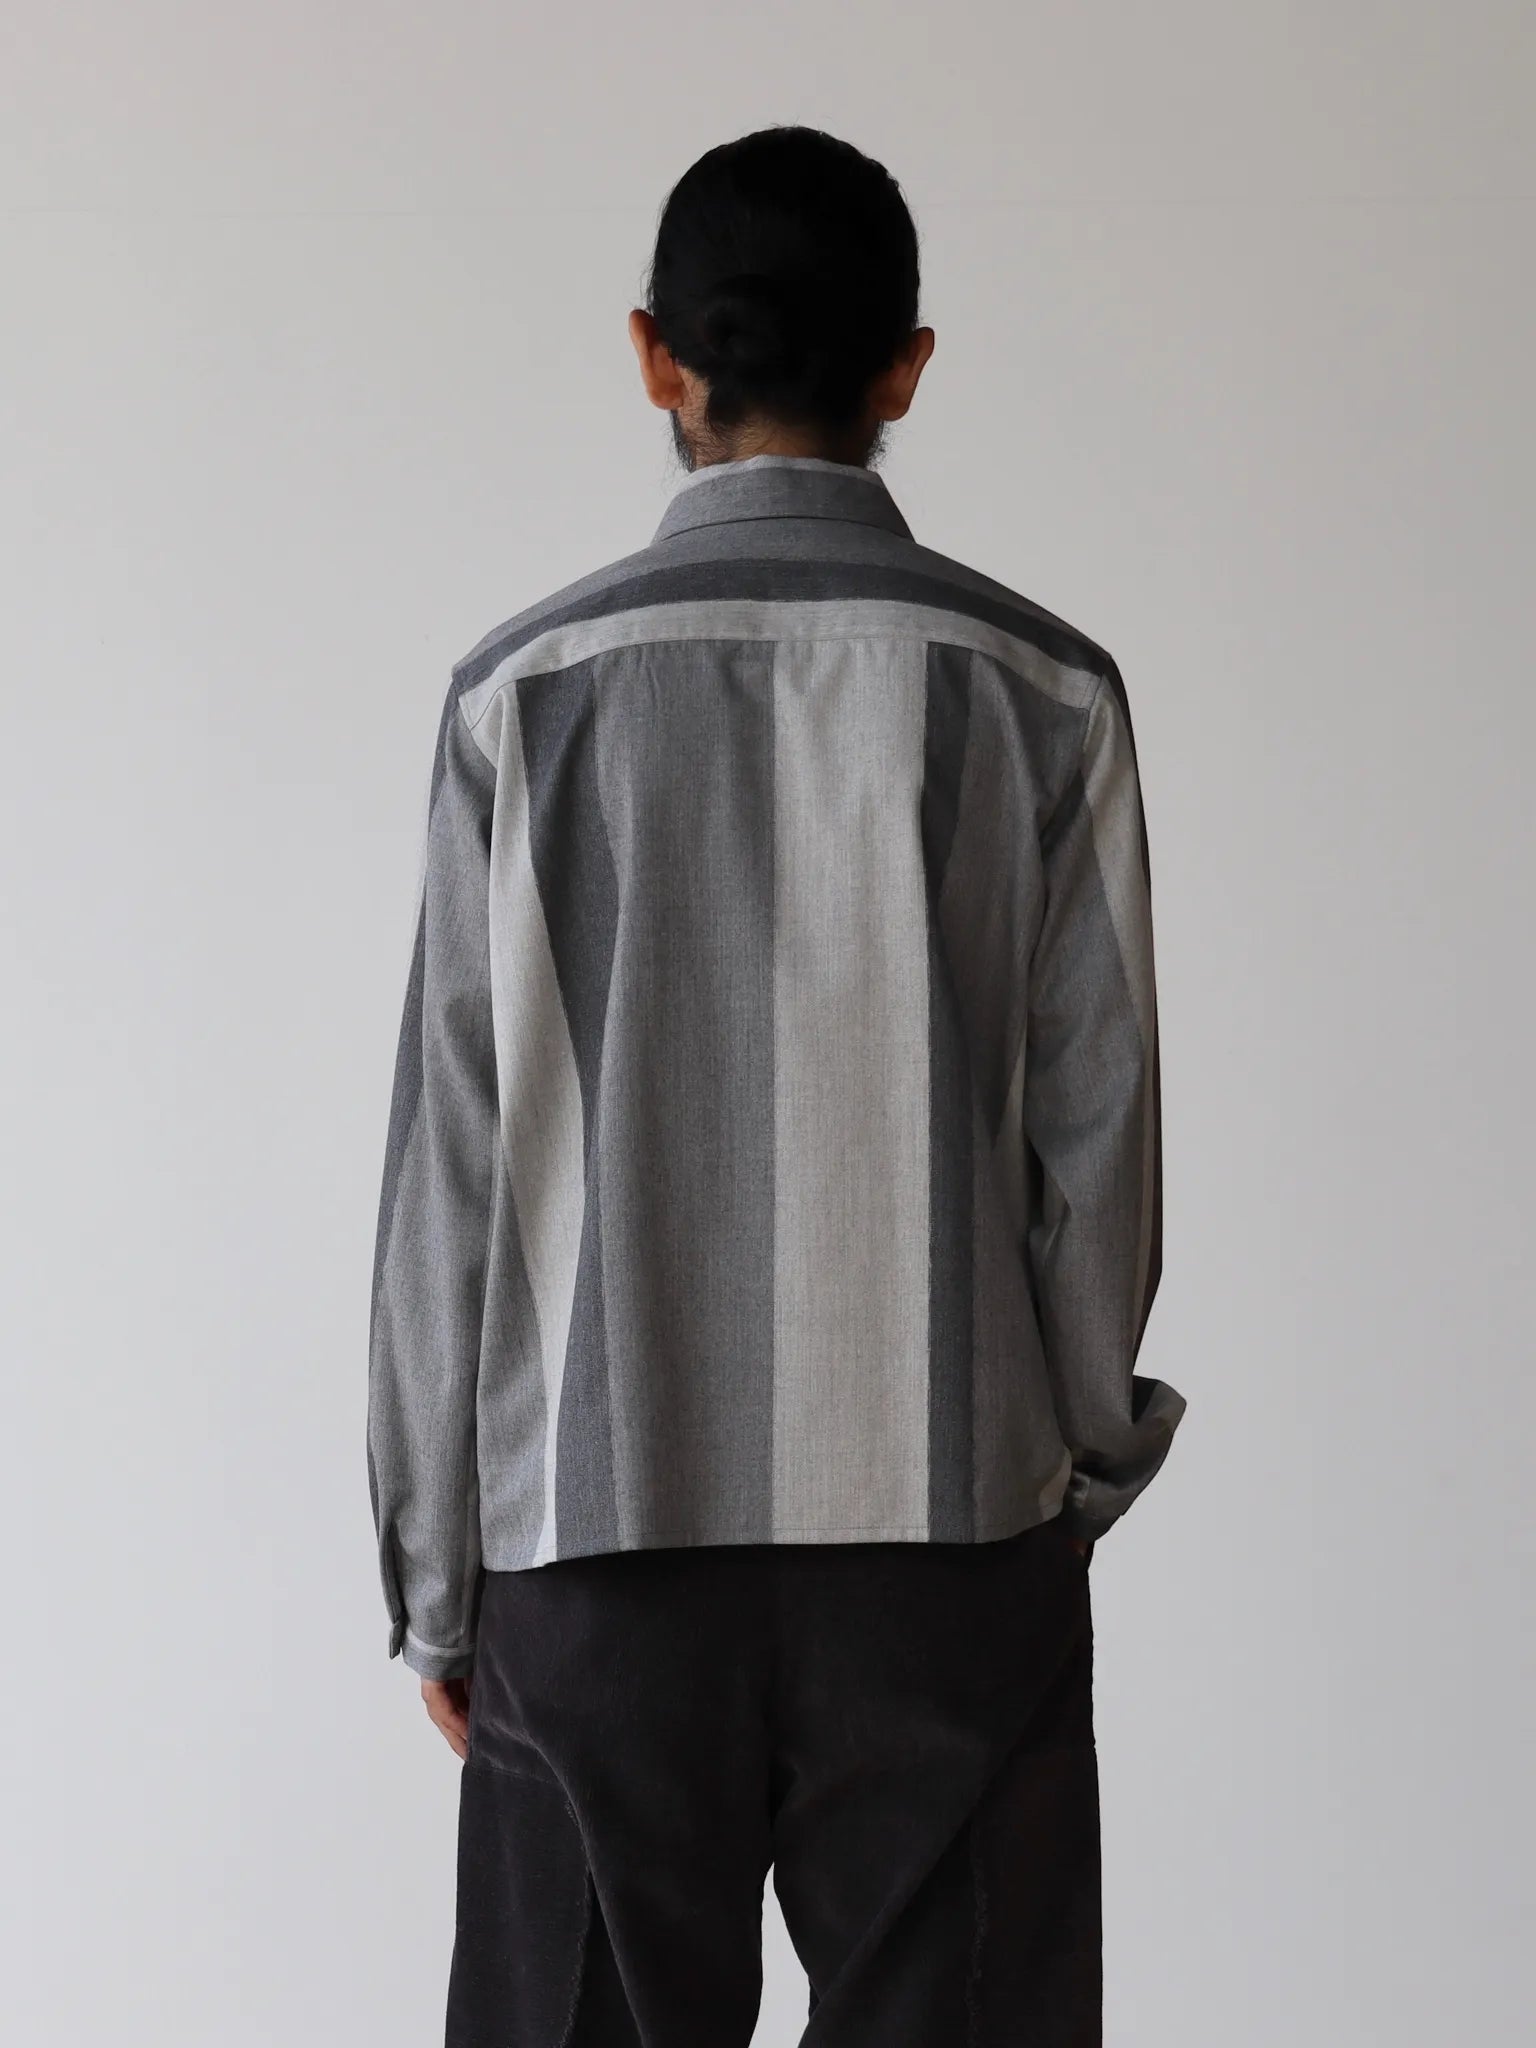 amachi-texture-fluctuation-shirt-gray-5